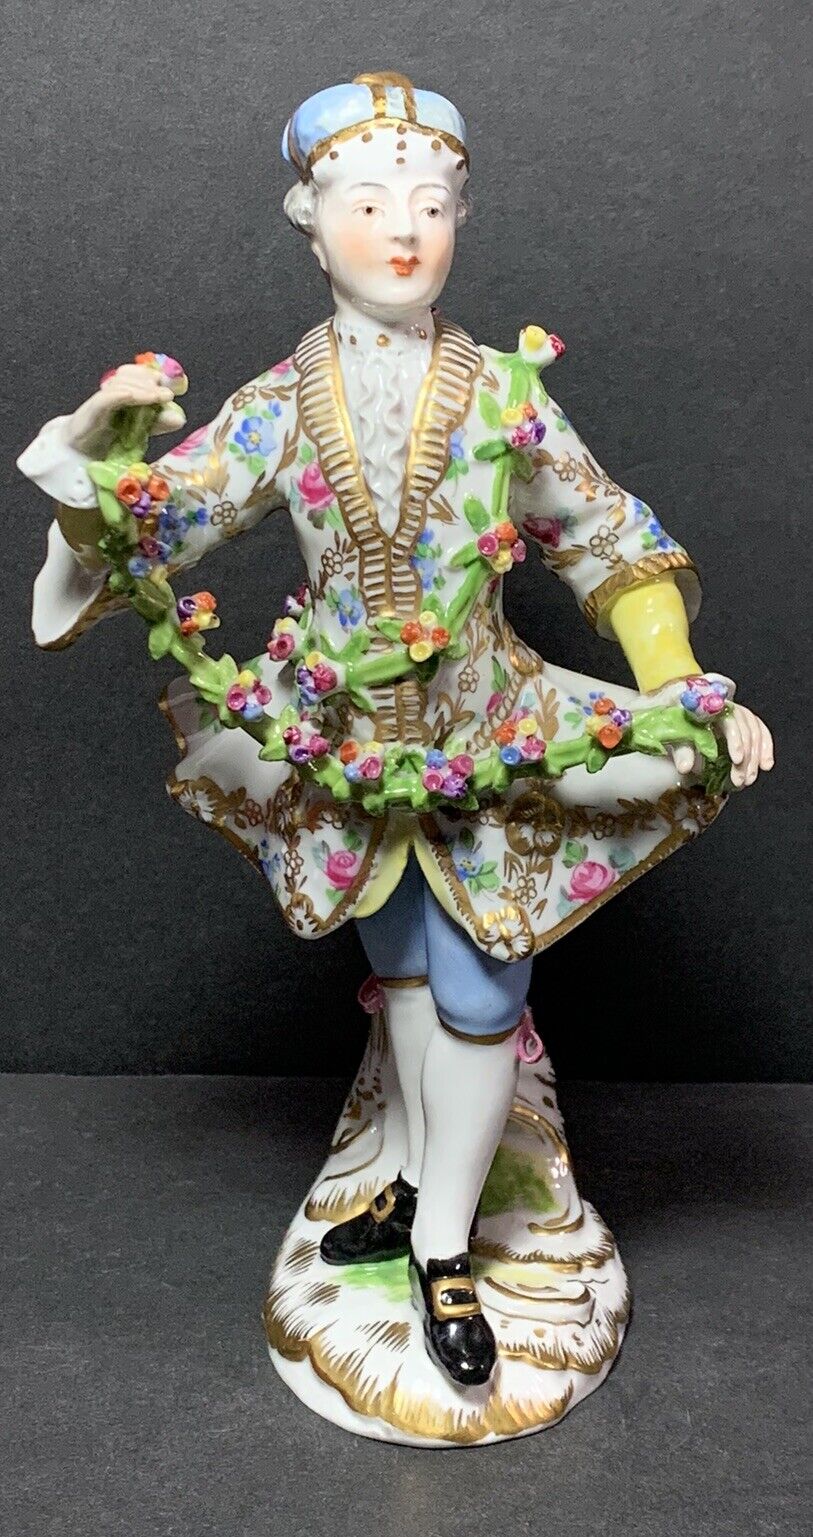 RARE Antique MEISSEN DRESDEN Porcelain Man Dancer w/ FLORAL GARLAND FIGURINE